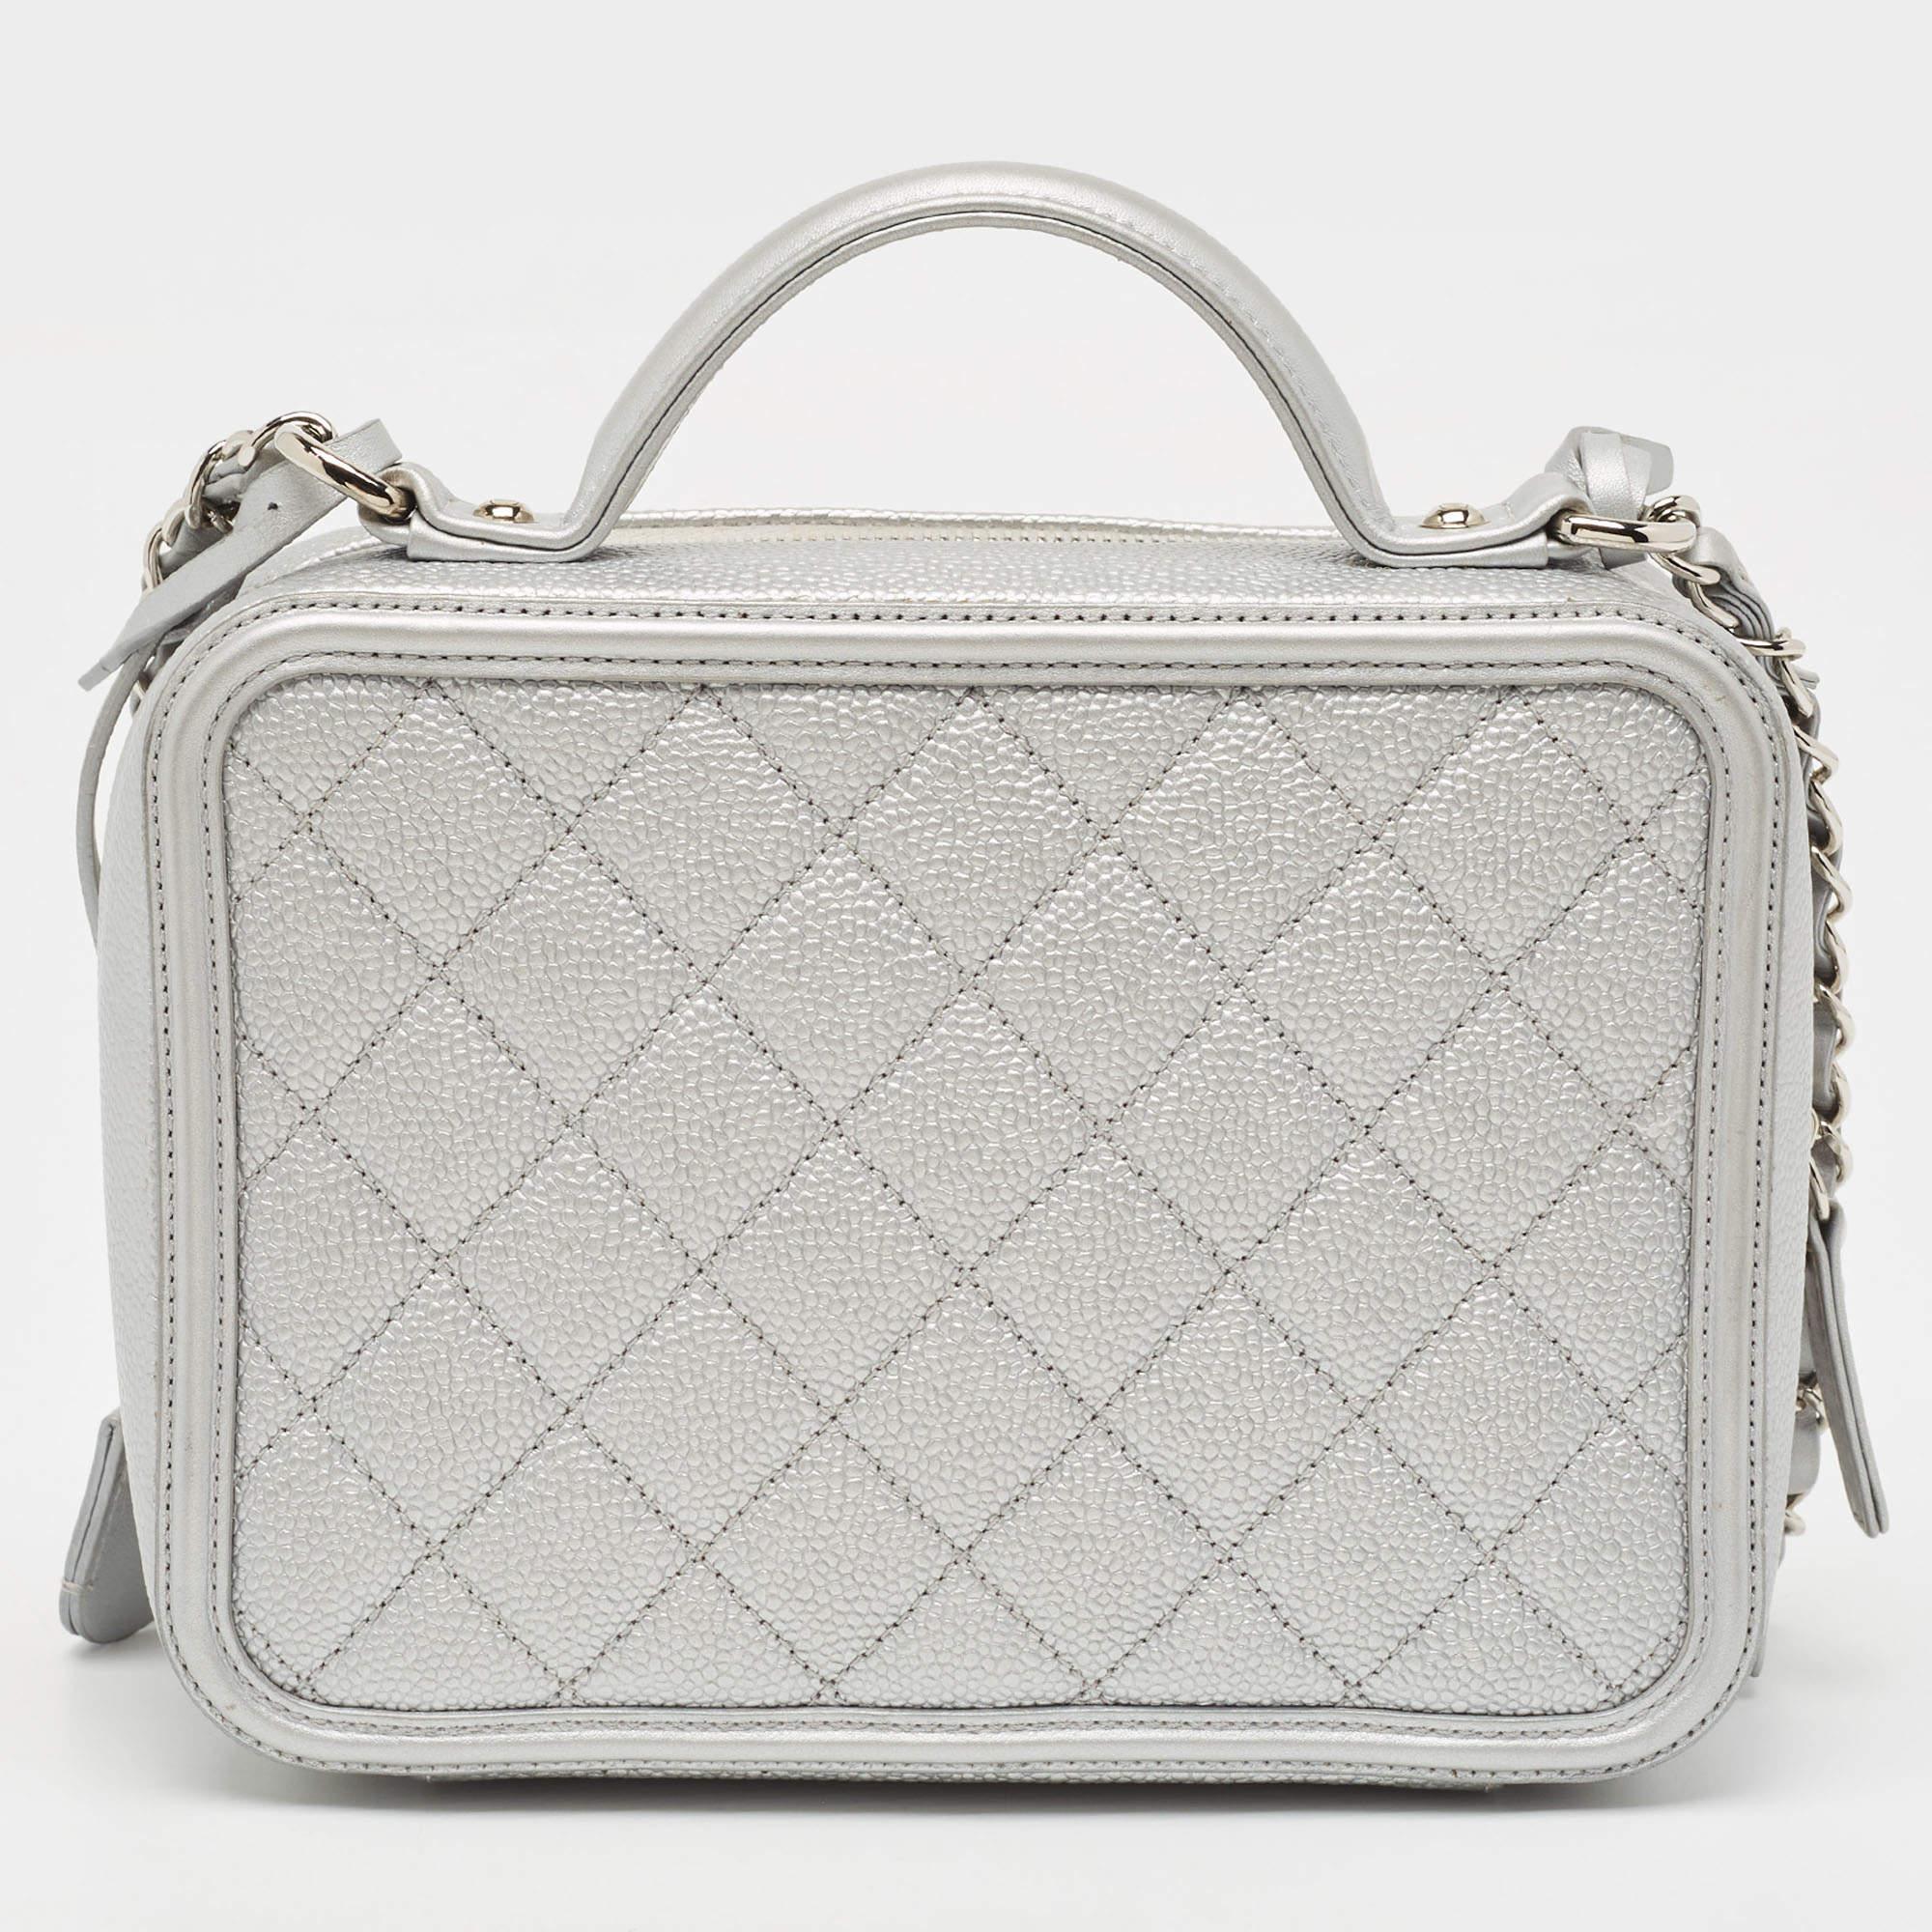 Makellose Handwerkskunst, immenser Stil und ein Hauch von Eleganz - diese Chanel Tasche hat alles, was sie braucht! Die perfekt genähte Handtasche wird nur aus erstklassigen MATERIALEN hergestellt, damit sie Ihnen lange erhalten bleibt. Mit den